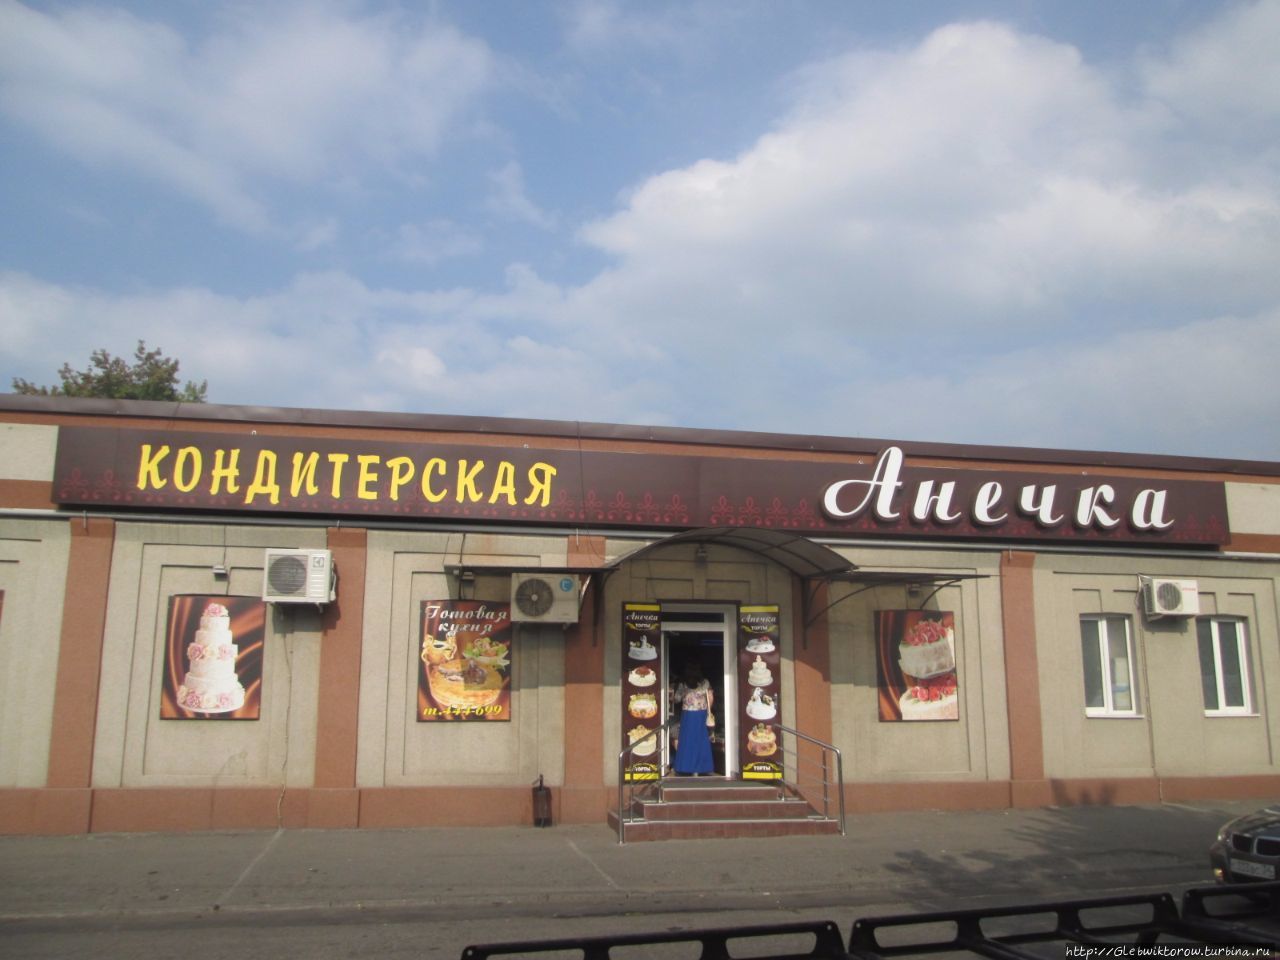 Второй день во Владикавказе — прогулки по разным местам Владикавказ, Россия